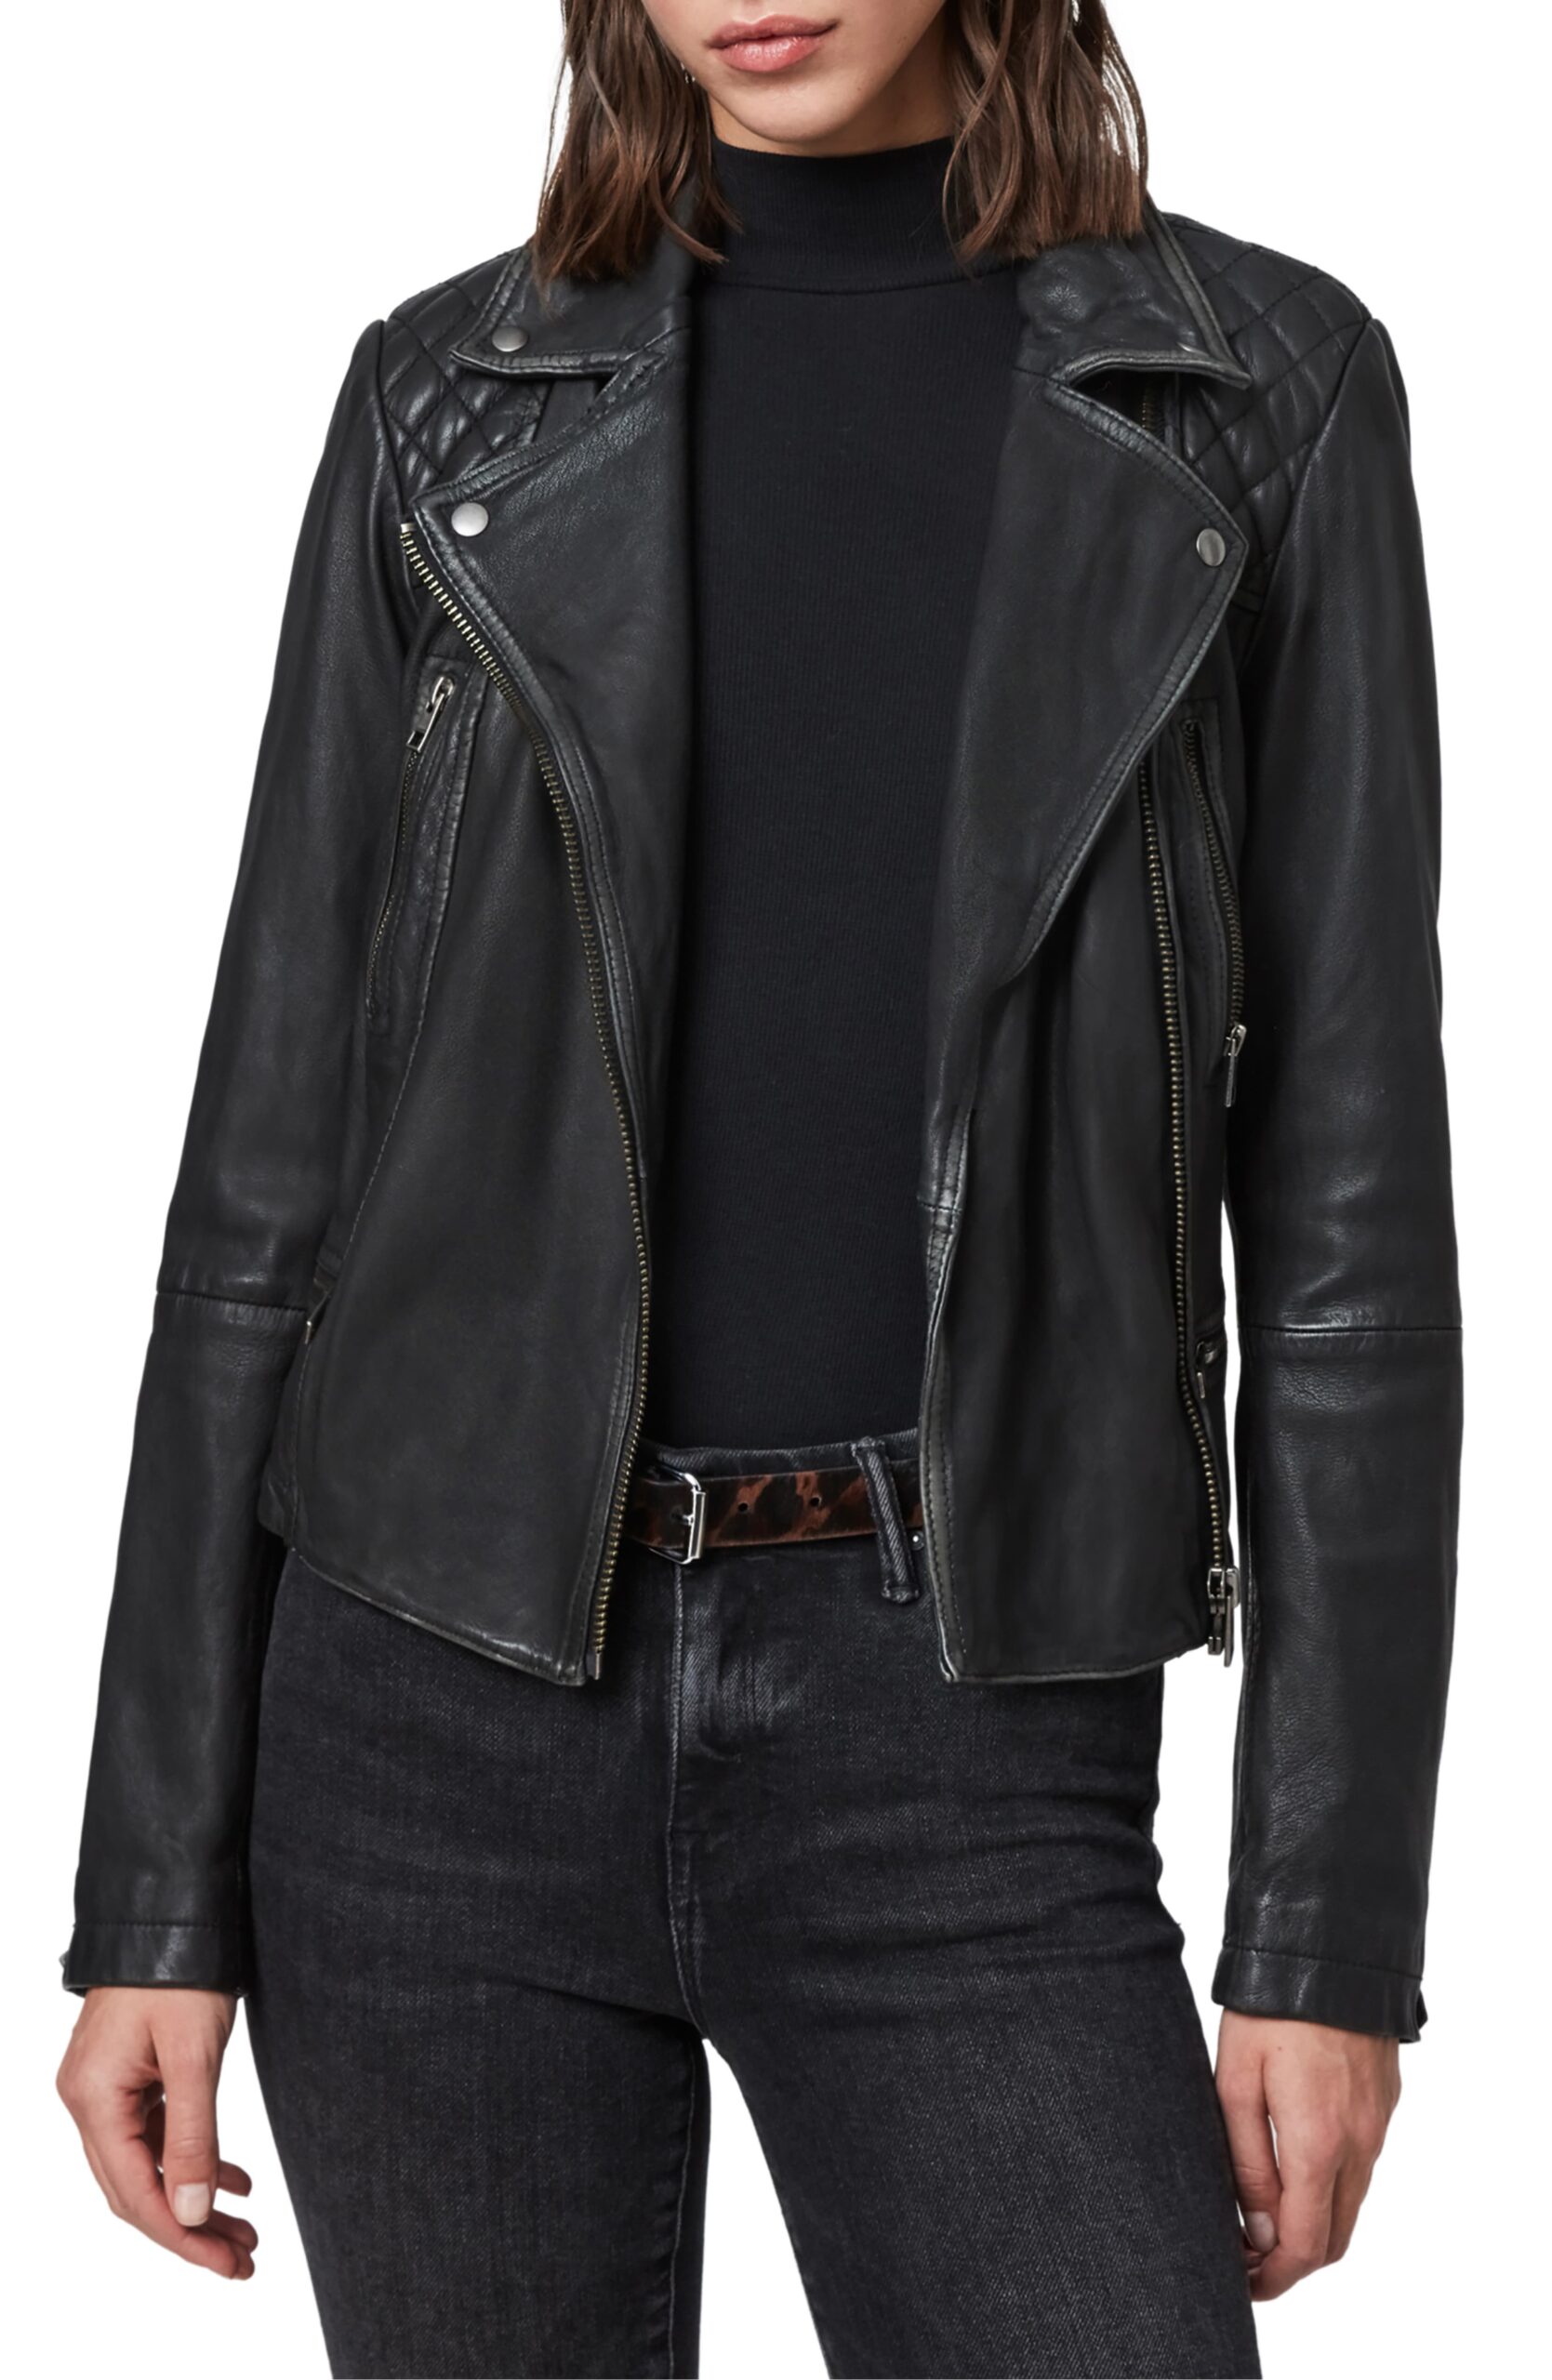 Kelsey Weier’s Black Leather Jacket | Big Blonde Hair